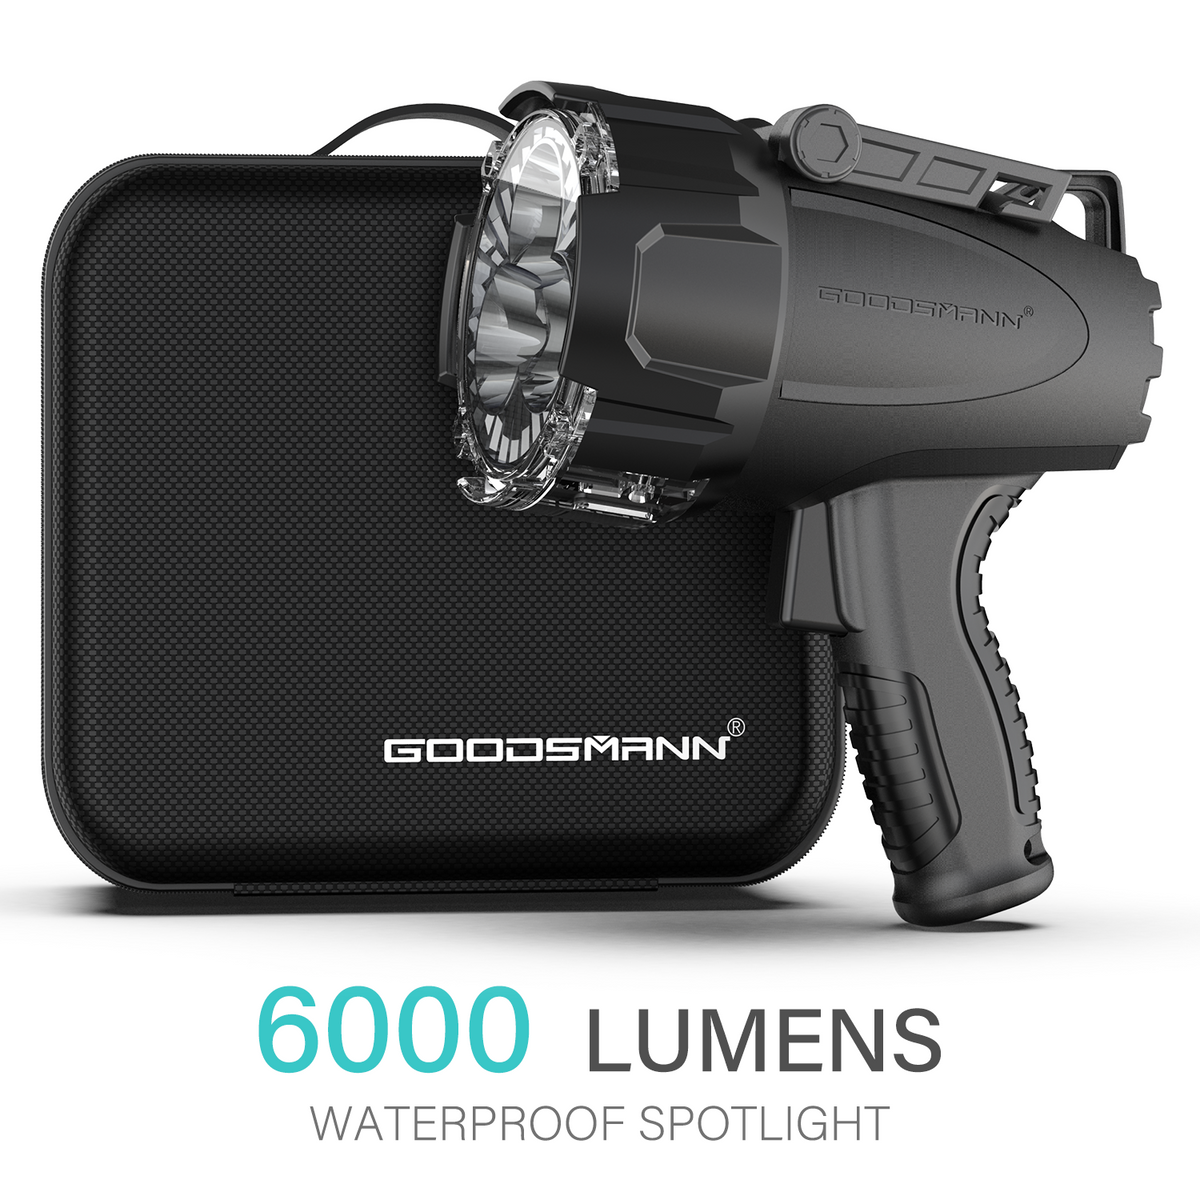 GOODSMANN Spotlight 6000 Lumen Boat Spotlight Waterproof Rechargeable Marin 